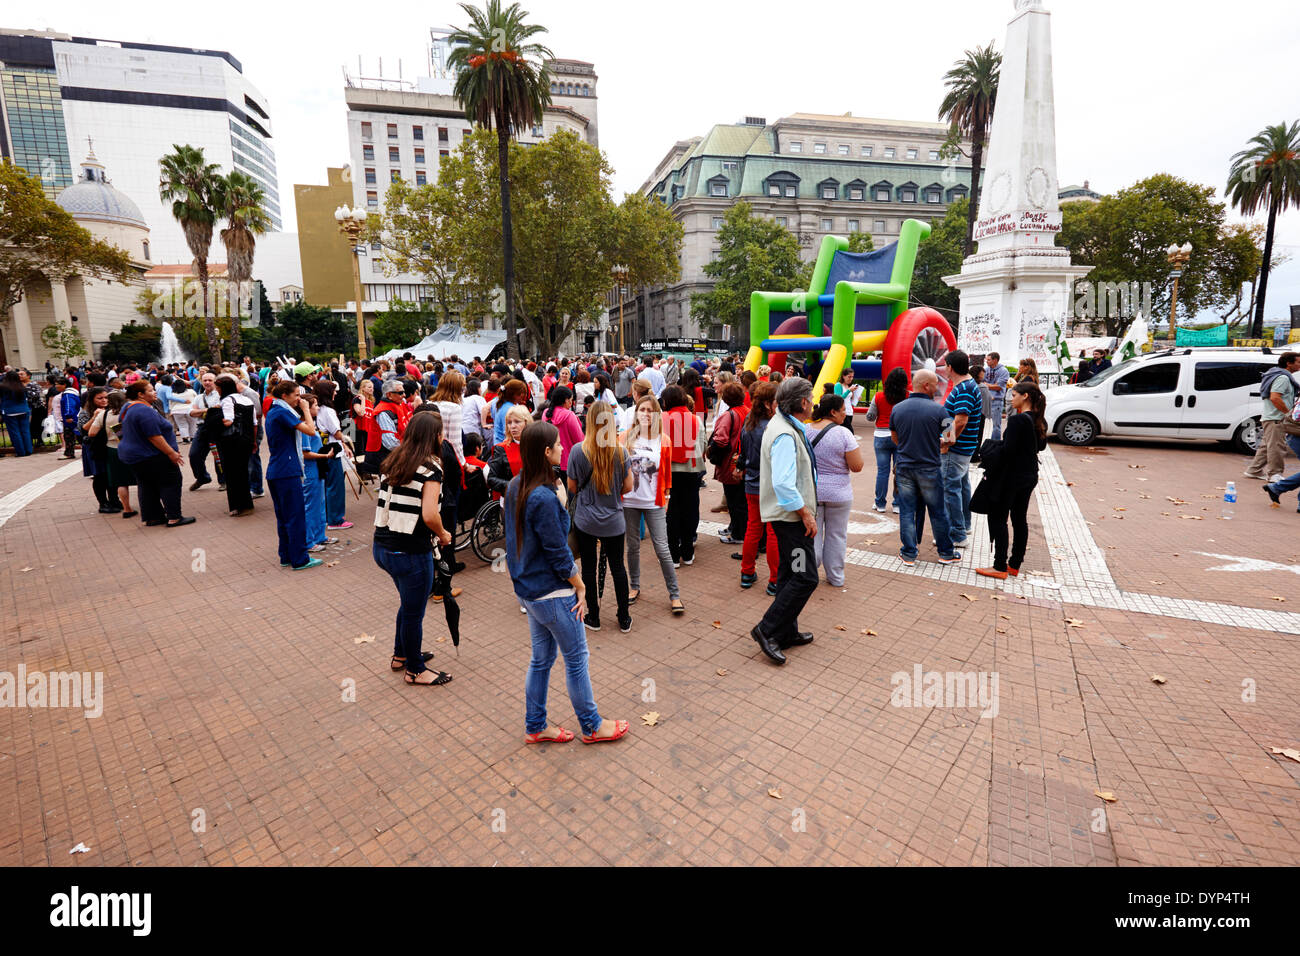 La protesta pública y manifestación plaza de mayo plaza principal en el centro de Buenos Aires Argentina Foto de stock